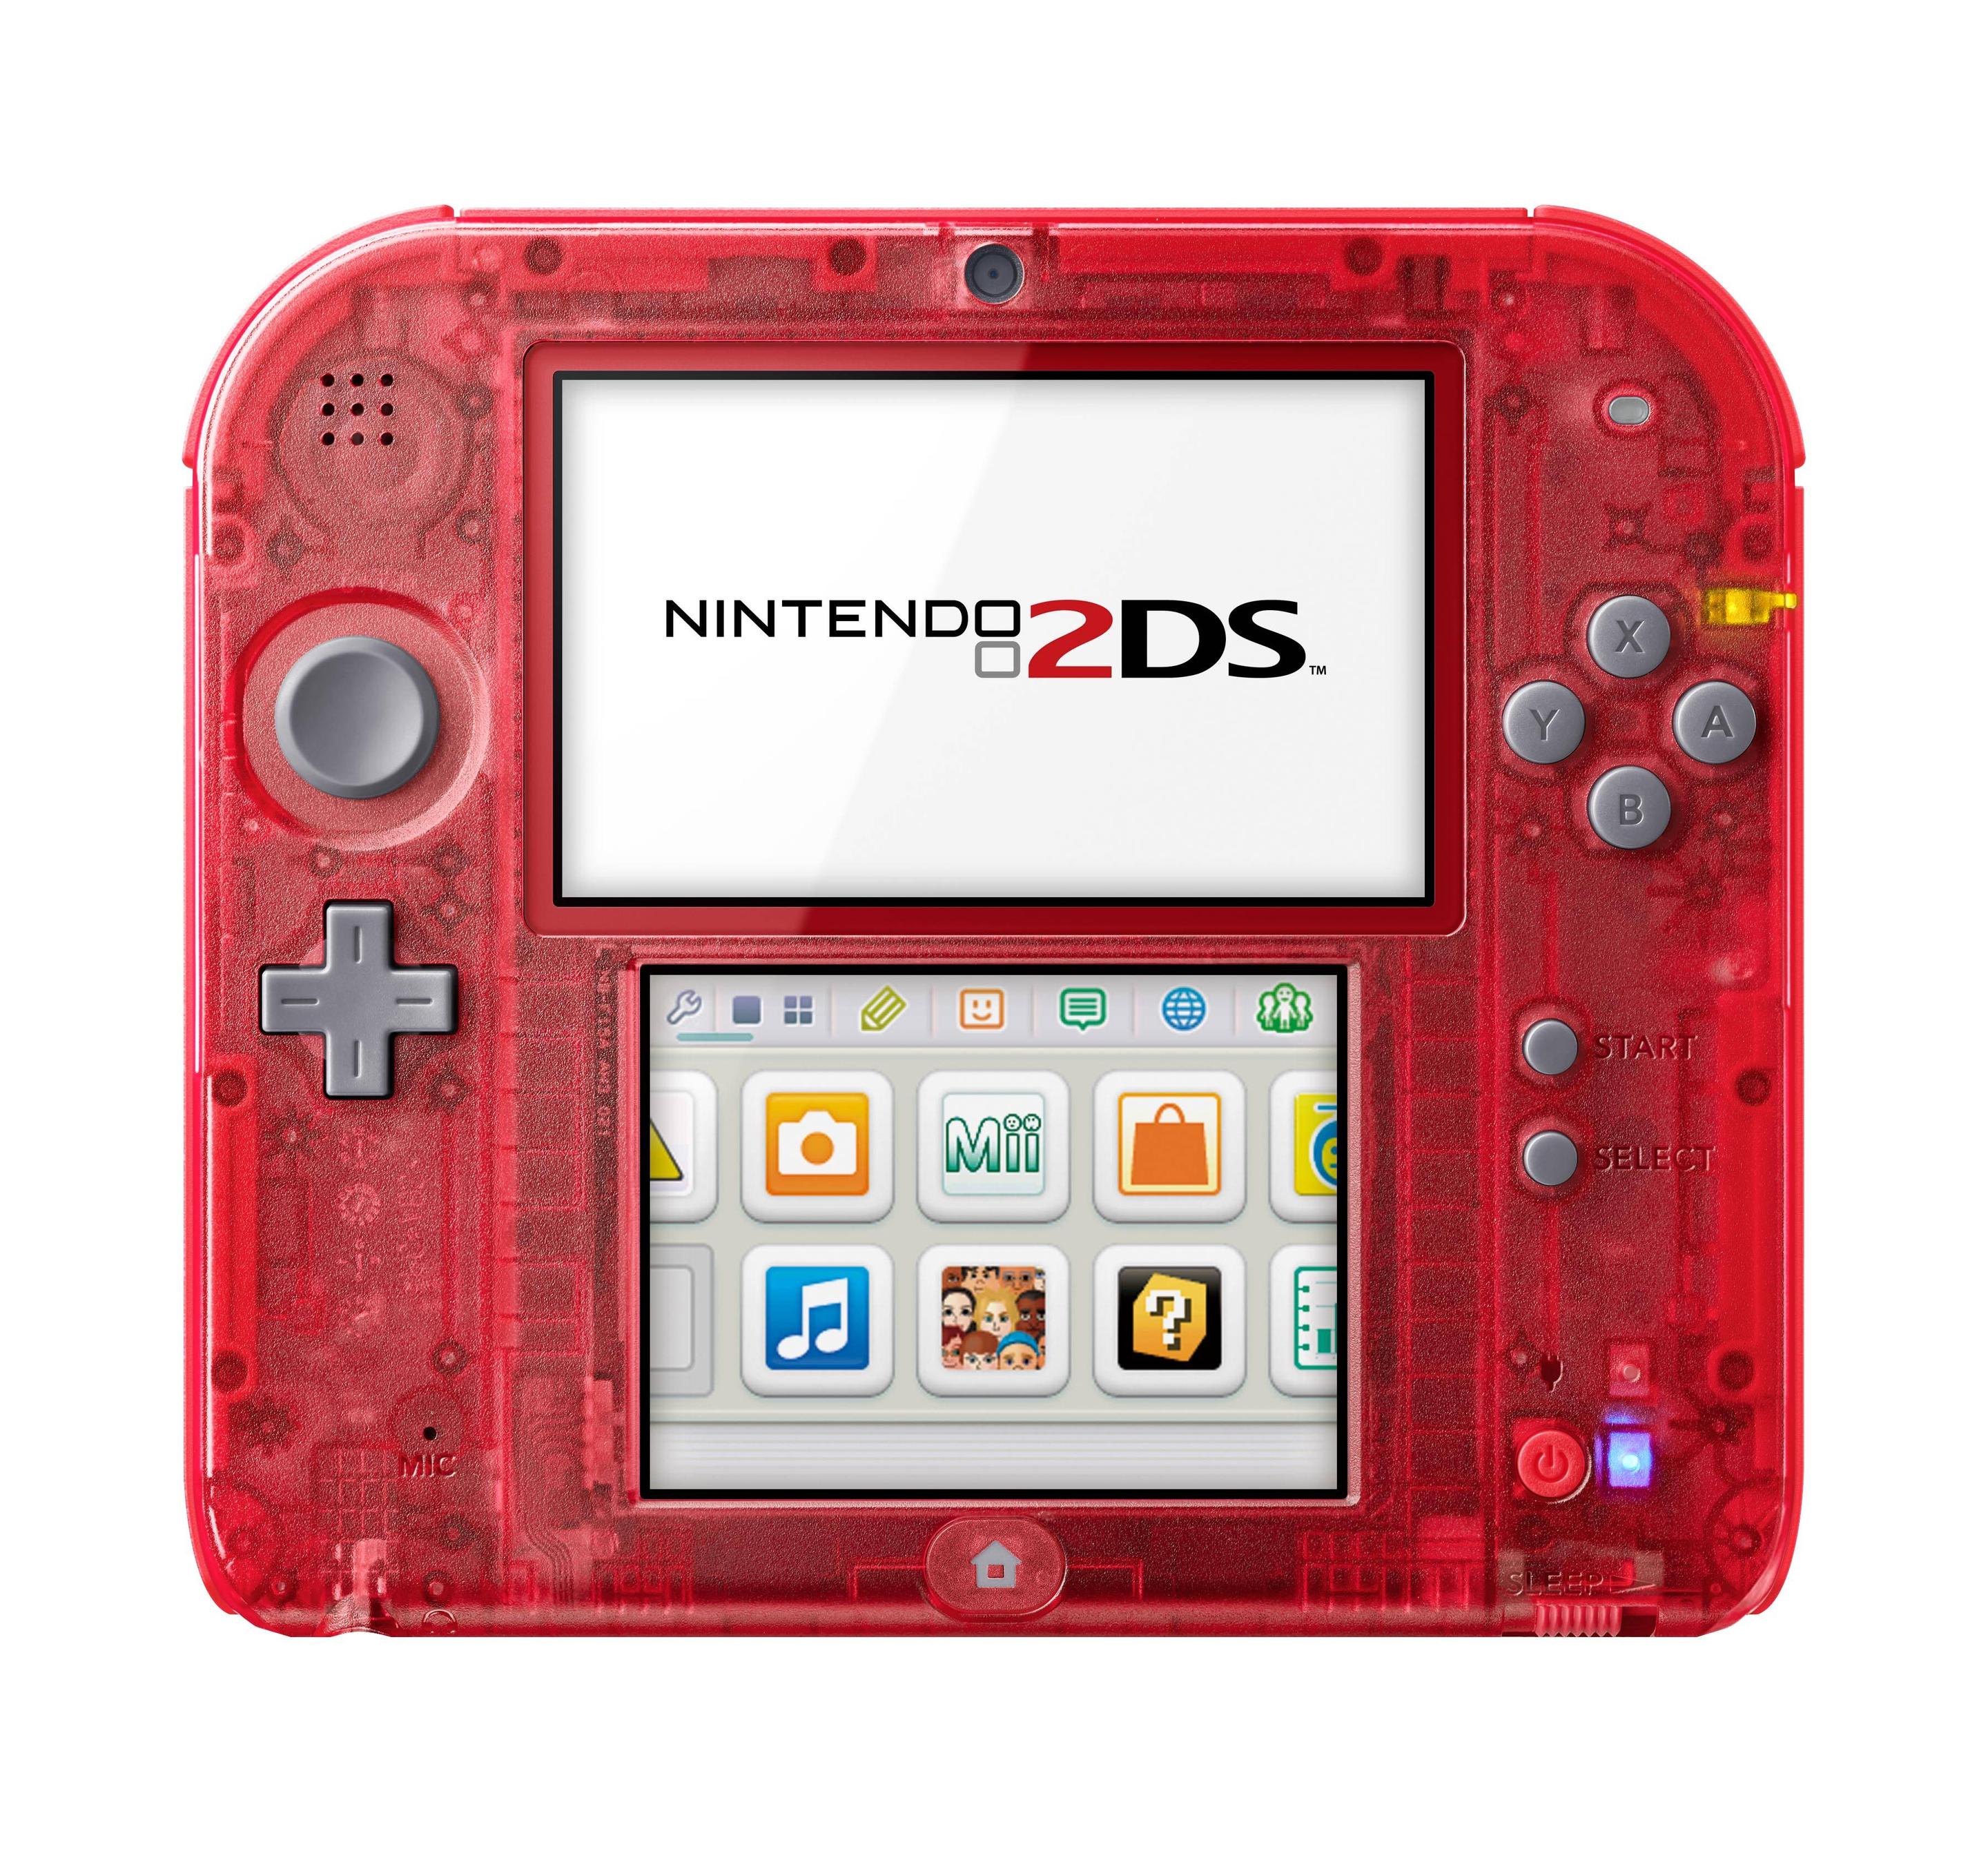 Nintendo ii. Nintendo 2ds. New Nintendo 3ds XL Orange Black. Nintendo 2ds Pokemon Edition. Nintendo 2ds Red.